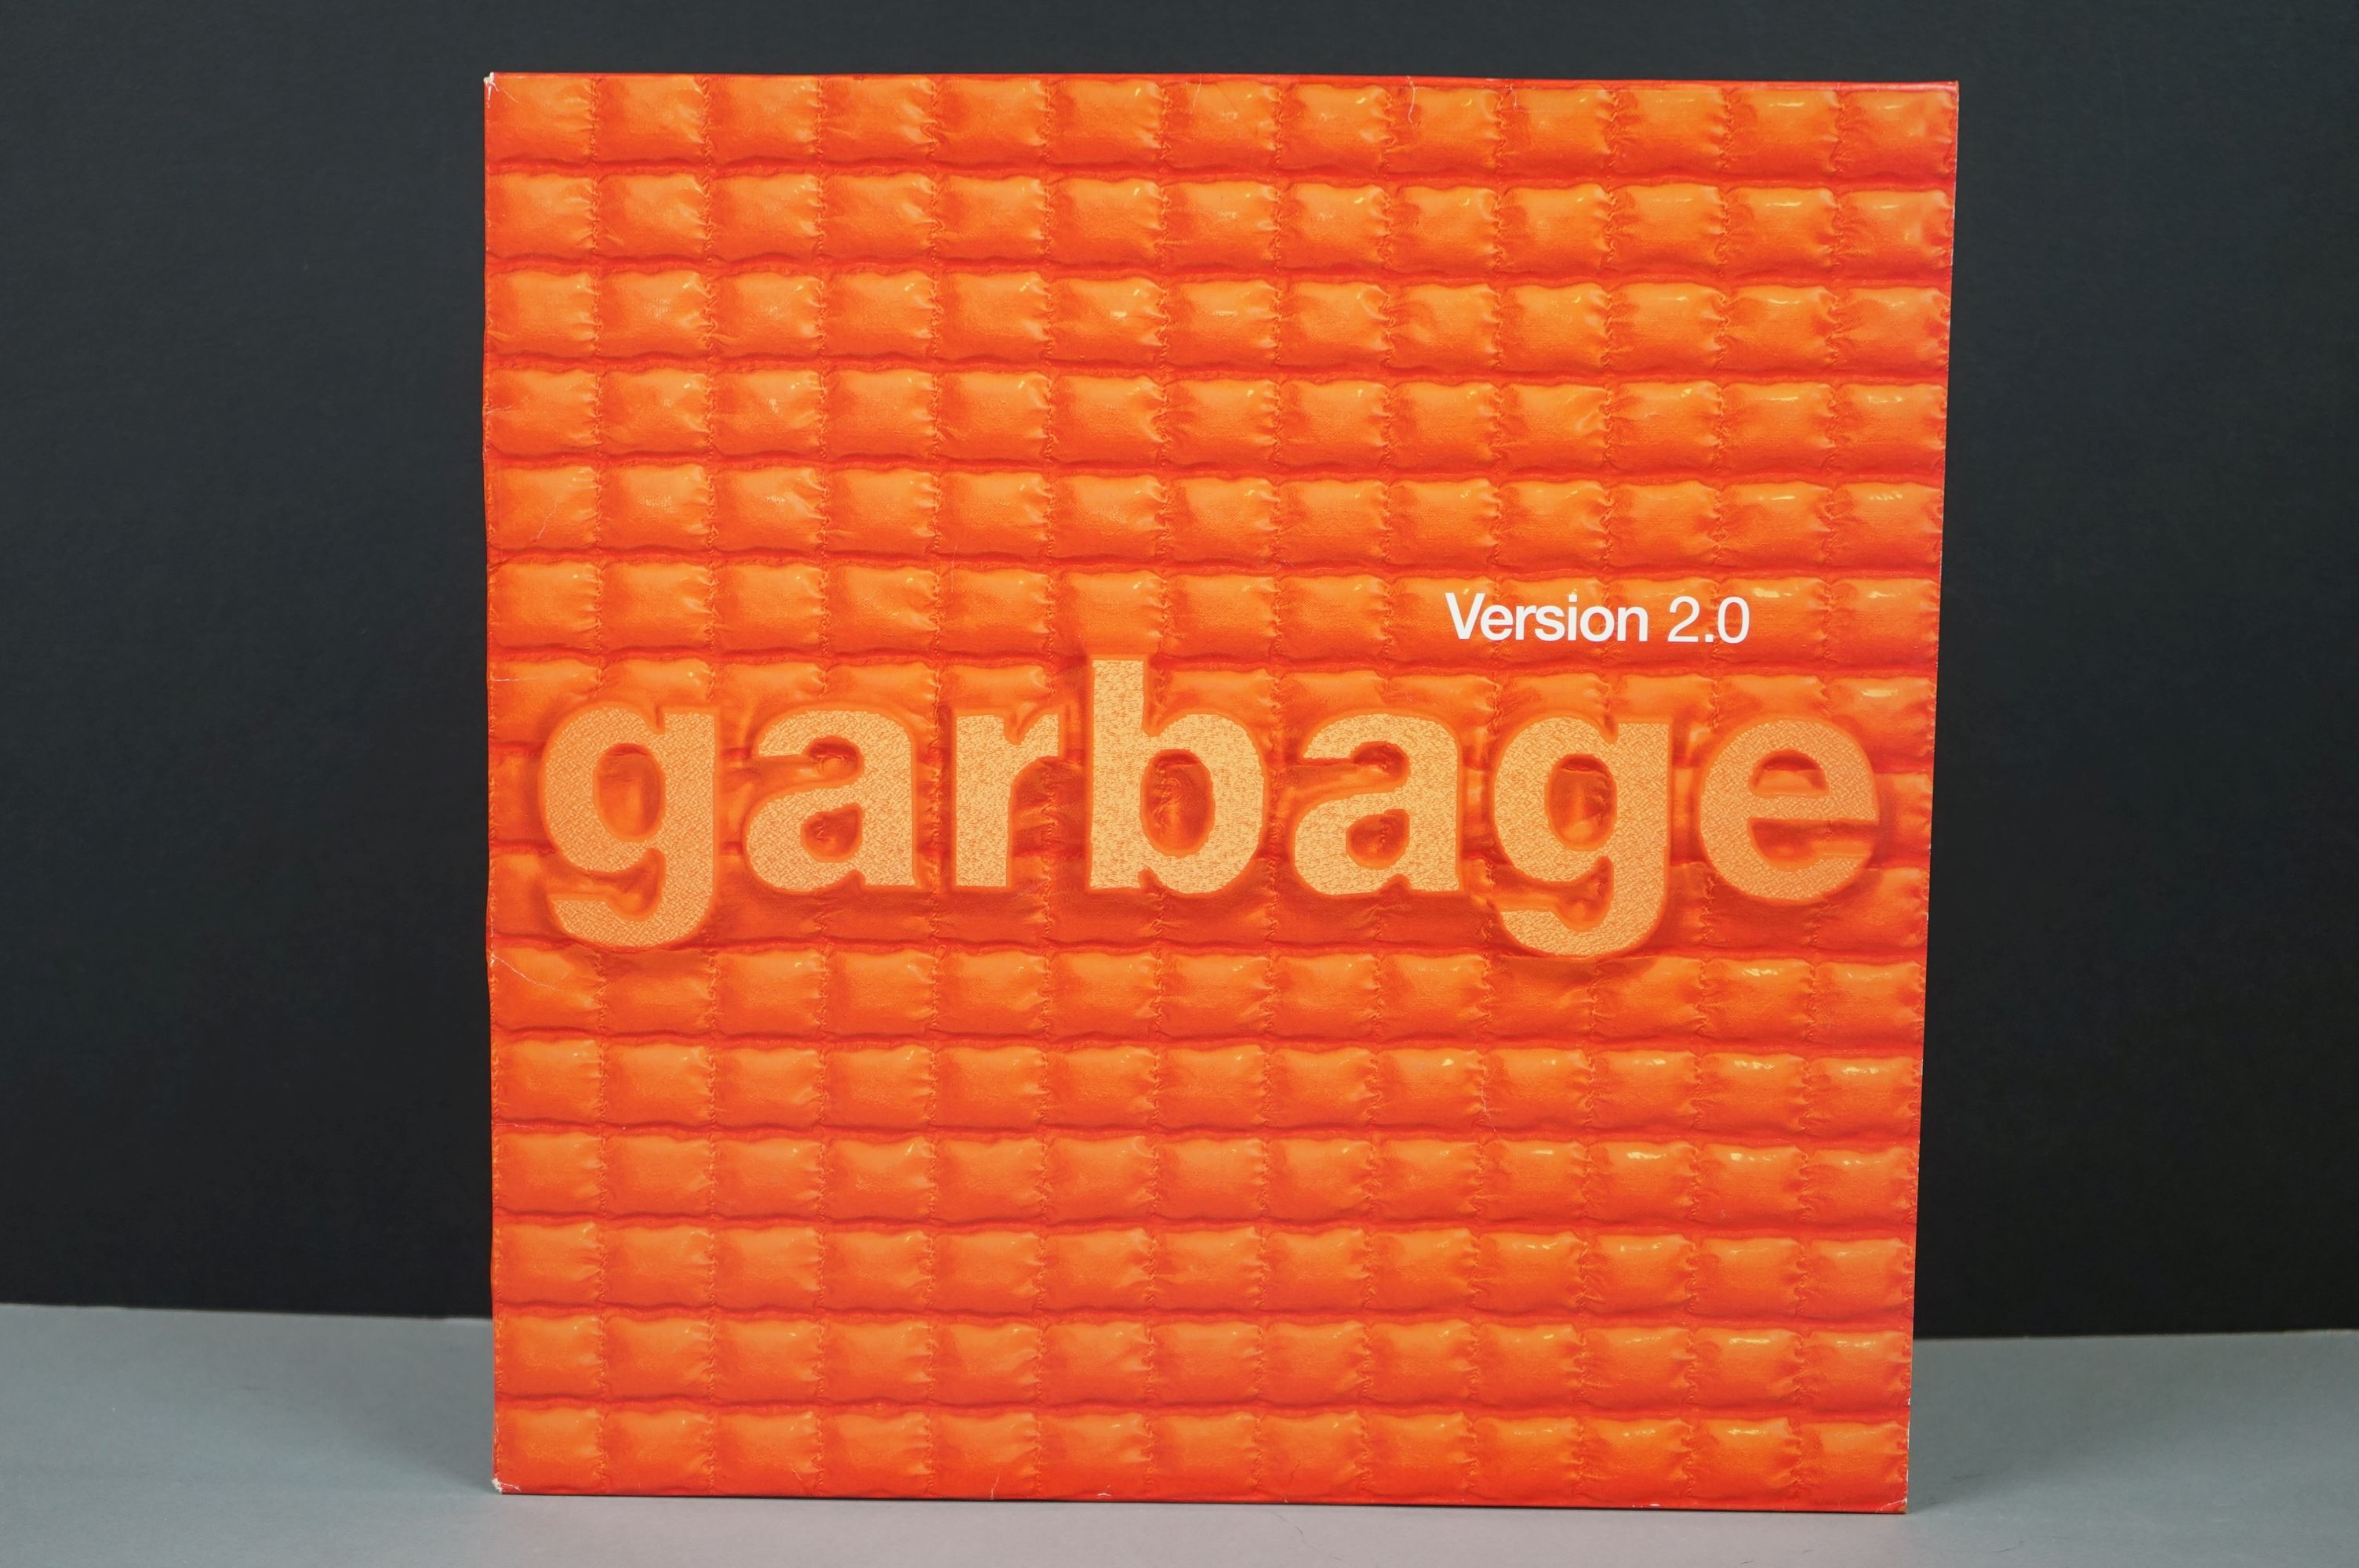 Vinyl - Garbage Version 2.0 LP on Mushroom MUSH29LP, with inner sleeve, sleeve vg+, vinyl ex